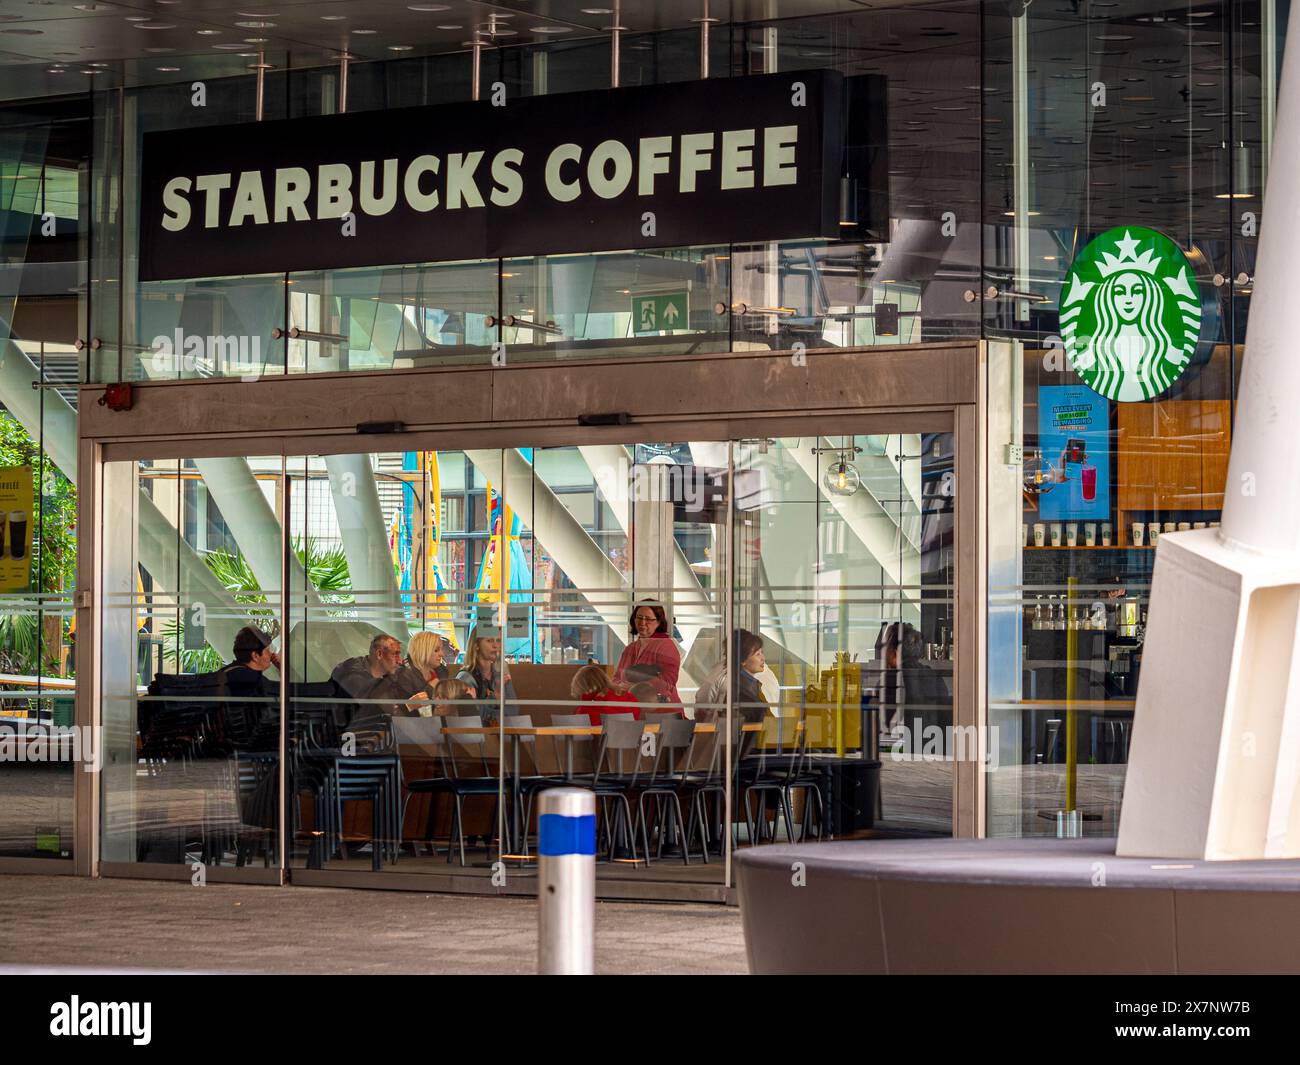 Starbucks Coffee Shop London – Starbucks Coffee am Bahnhof City Thameslink im Zentrum von London, Großbritannien. Starbucks 3 Fleet Place London. Stockfoto